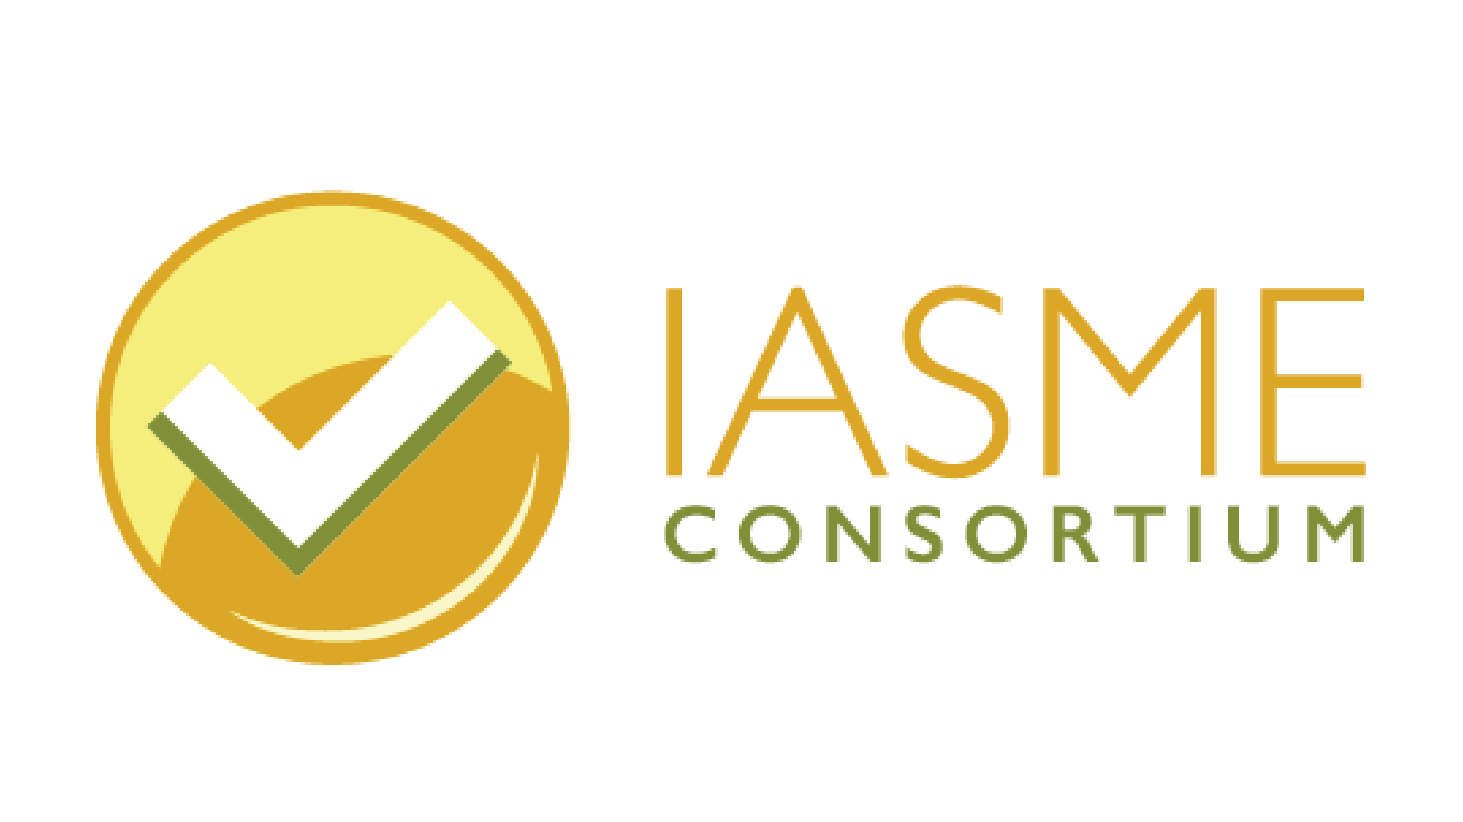 IASME consortium Cyber Essentials Cyber Essentials Plus